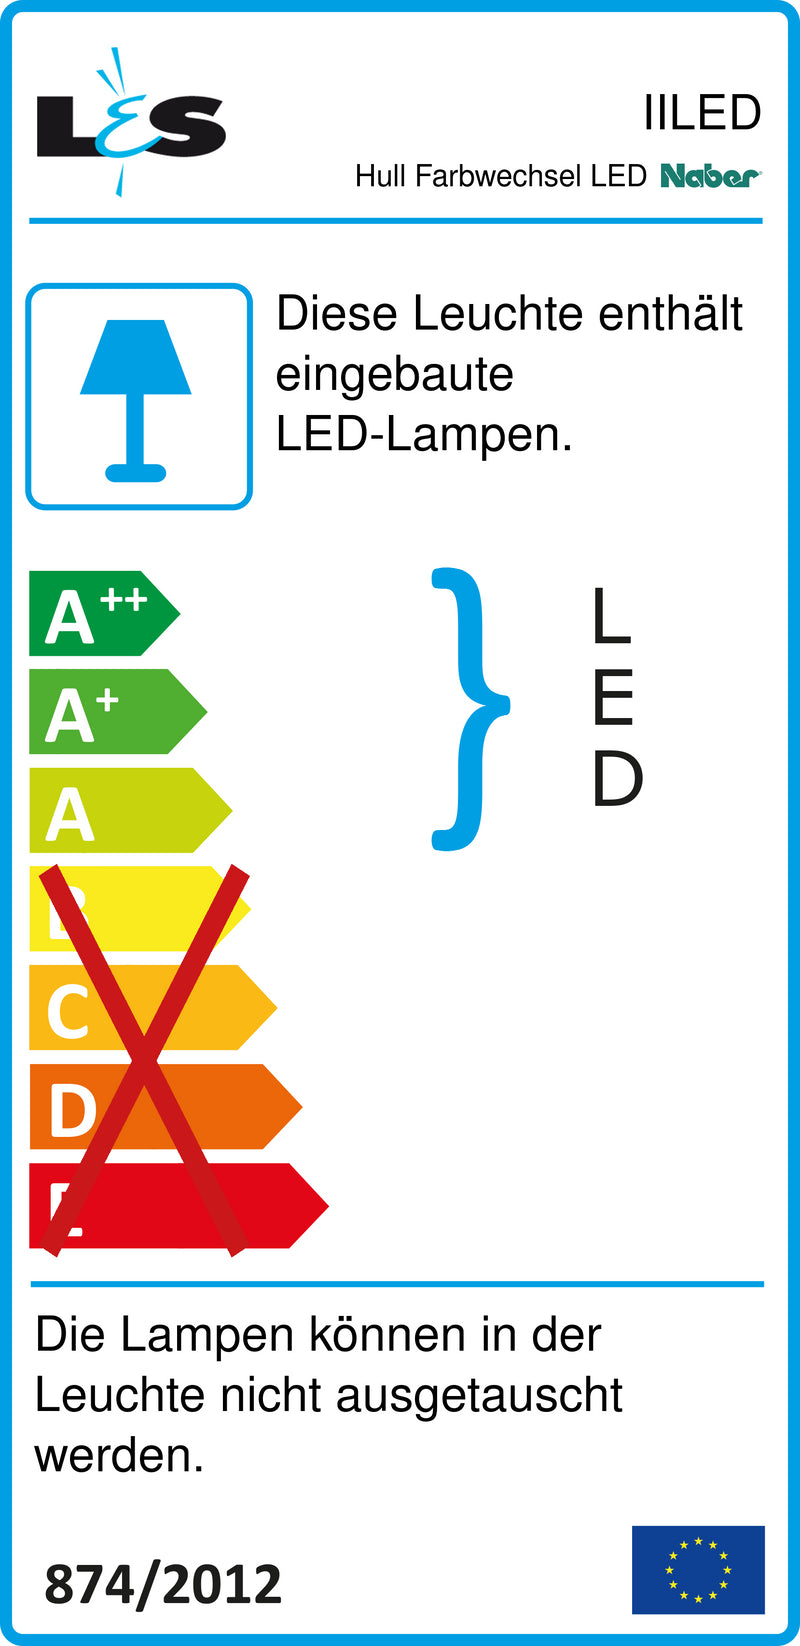 E-Label zu Zeichnung zu Hull Farbwechsel LED als Variante Set-2, edelstahlfarbig von Naber GmbH in der Kategorie Lichttechnik in Österreich auf conceptshop.at